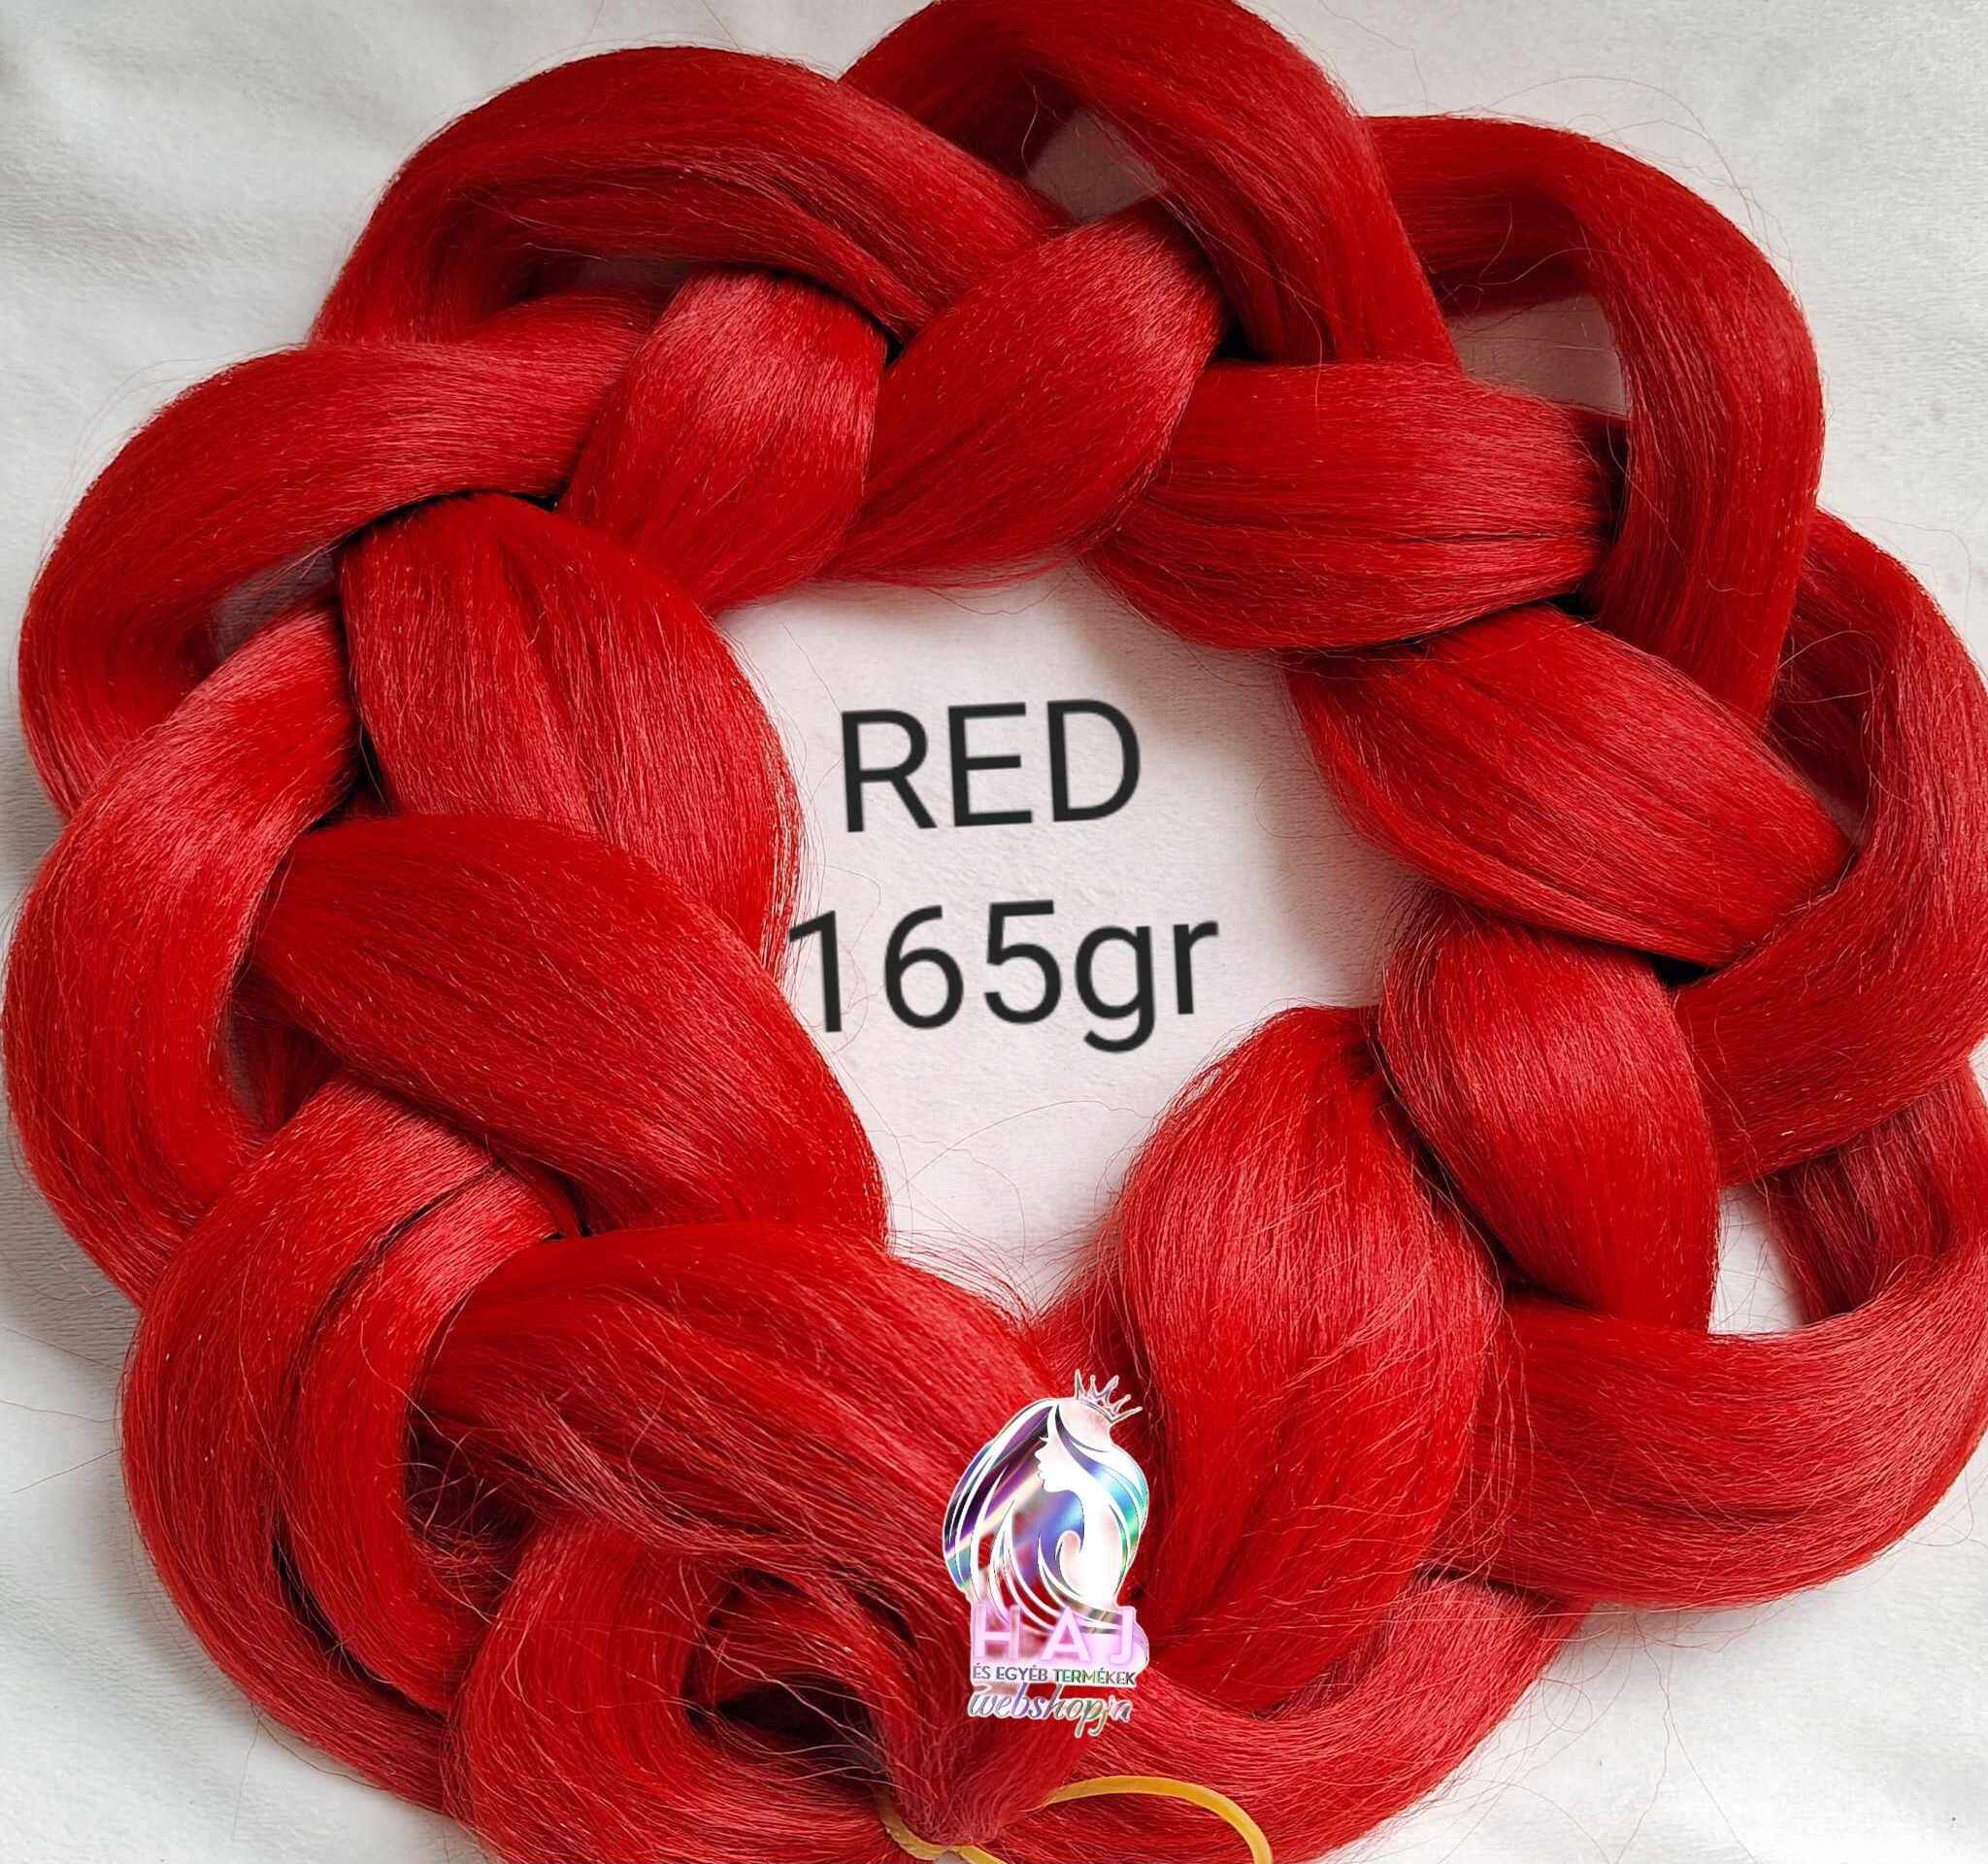 RED 165 gr - 1.250 Ft